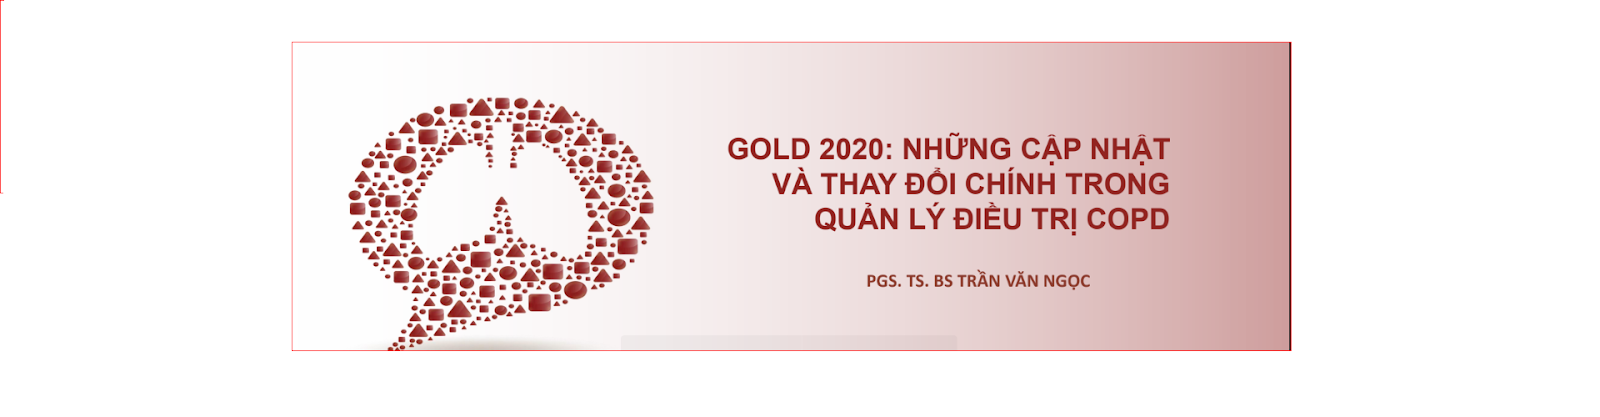 GOLD 2020: NHỮNG CẬP NHẬT VÀ THAY ĐỔI CHÍNH TRONG QUẢN LÝ ĐIỀU TRỊ COPD